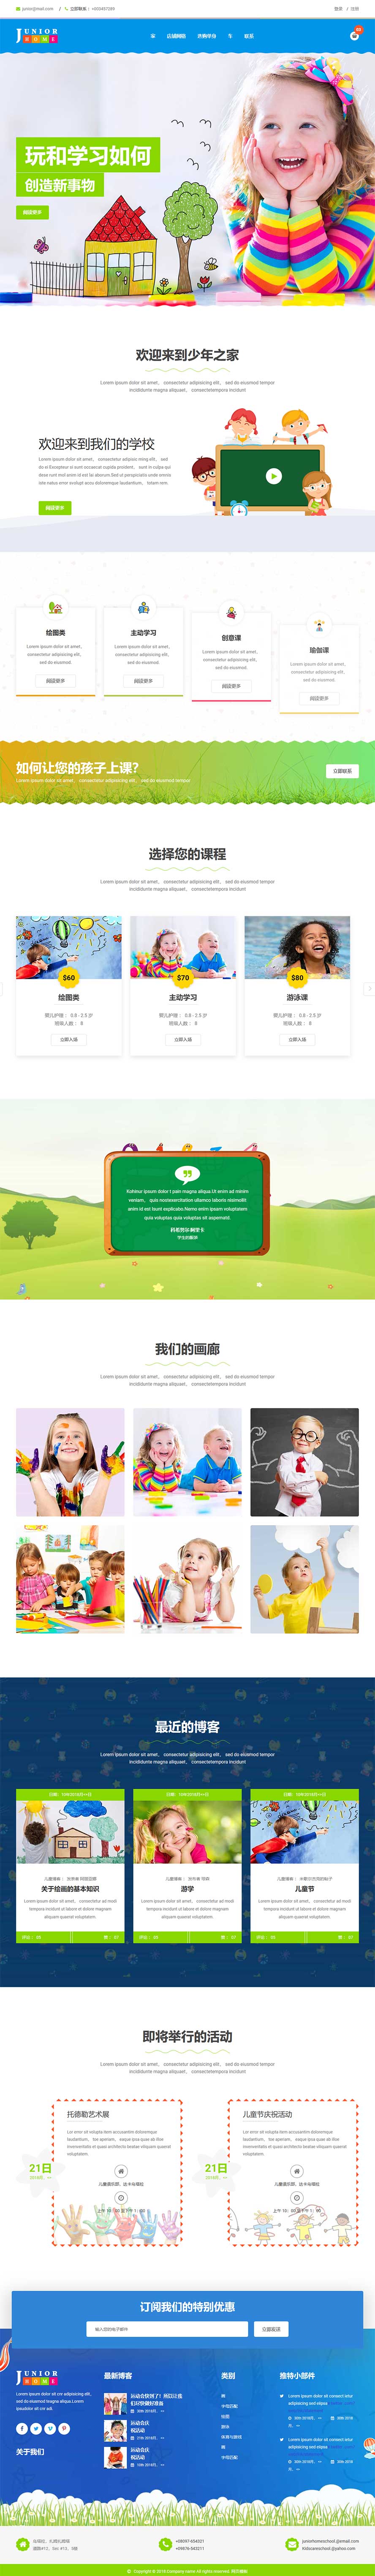 幼儿教育网站模板,少儿美术网站模板,绘画静态网站模板